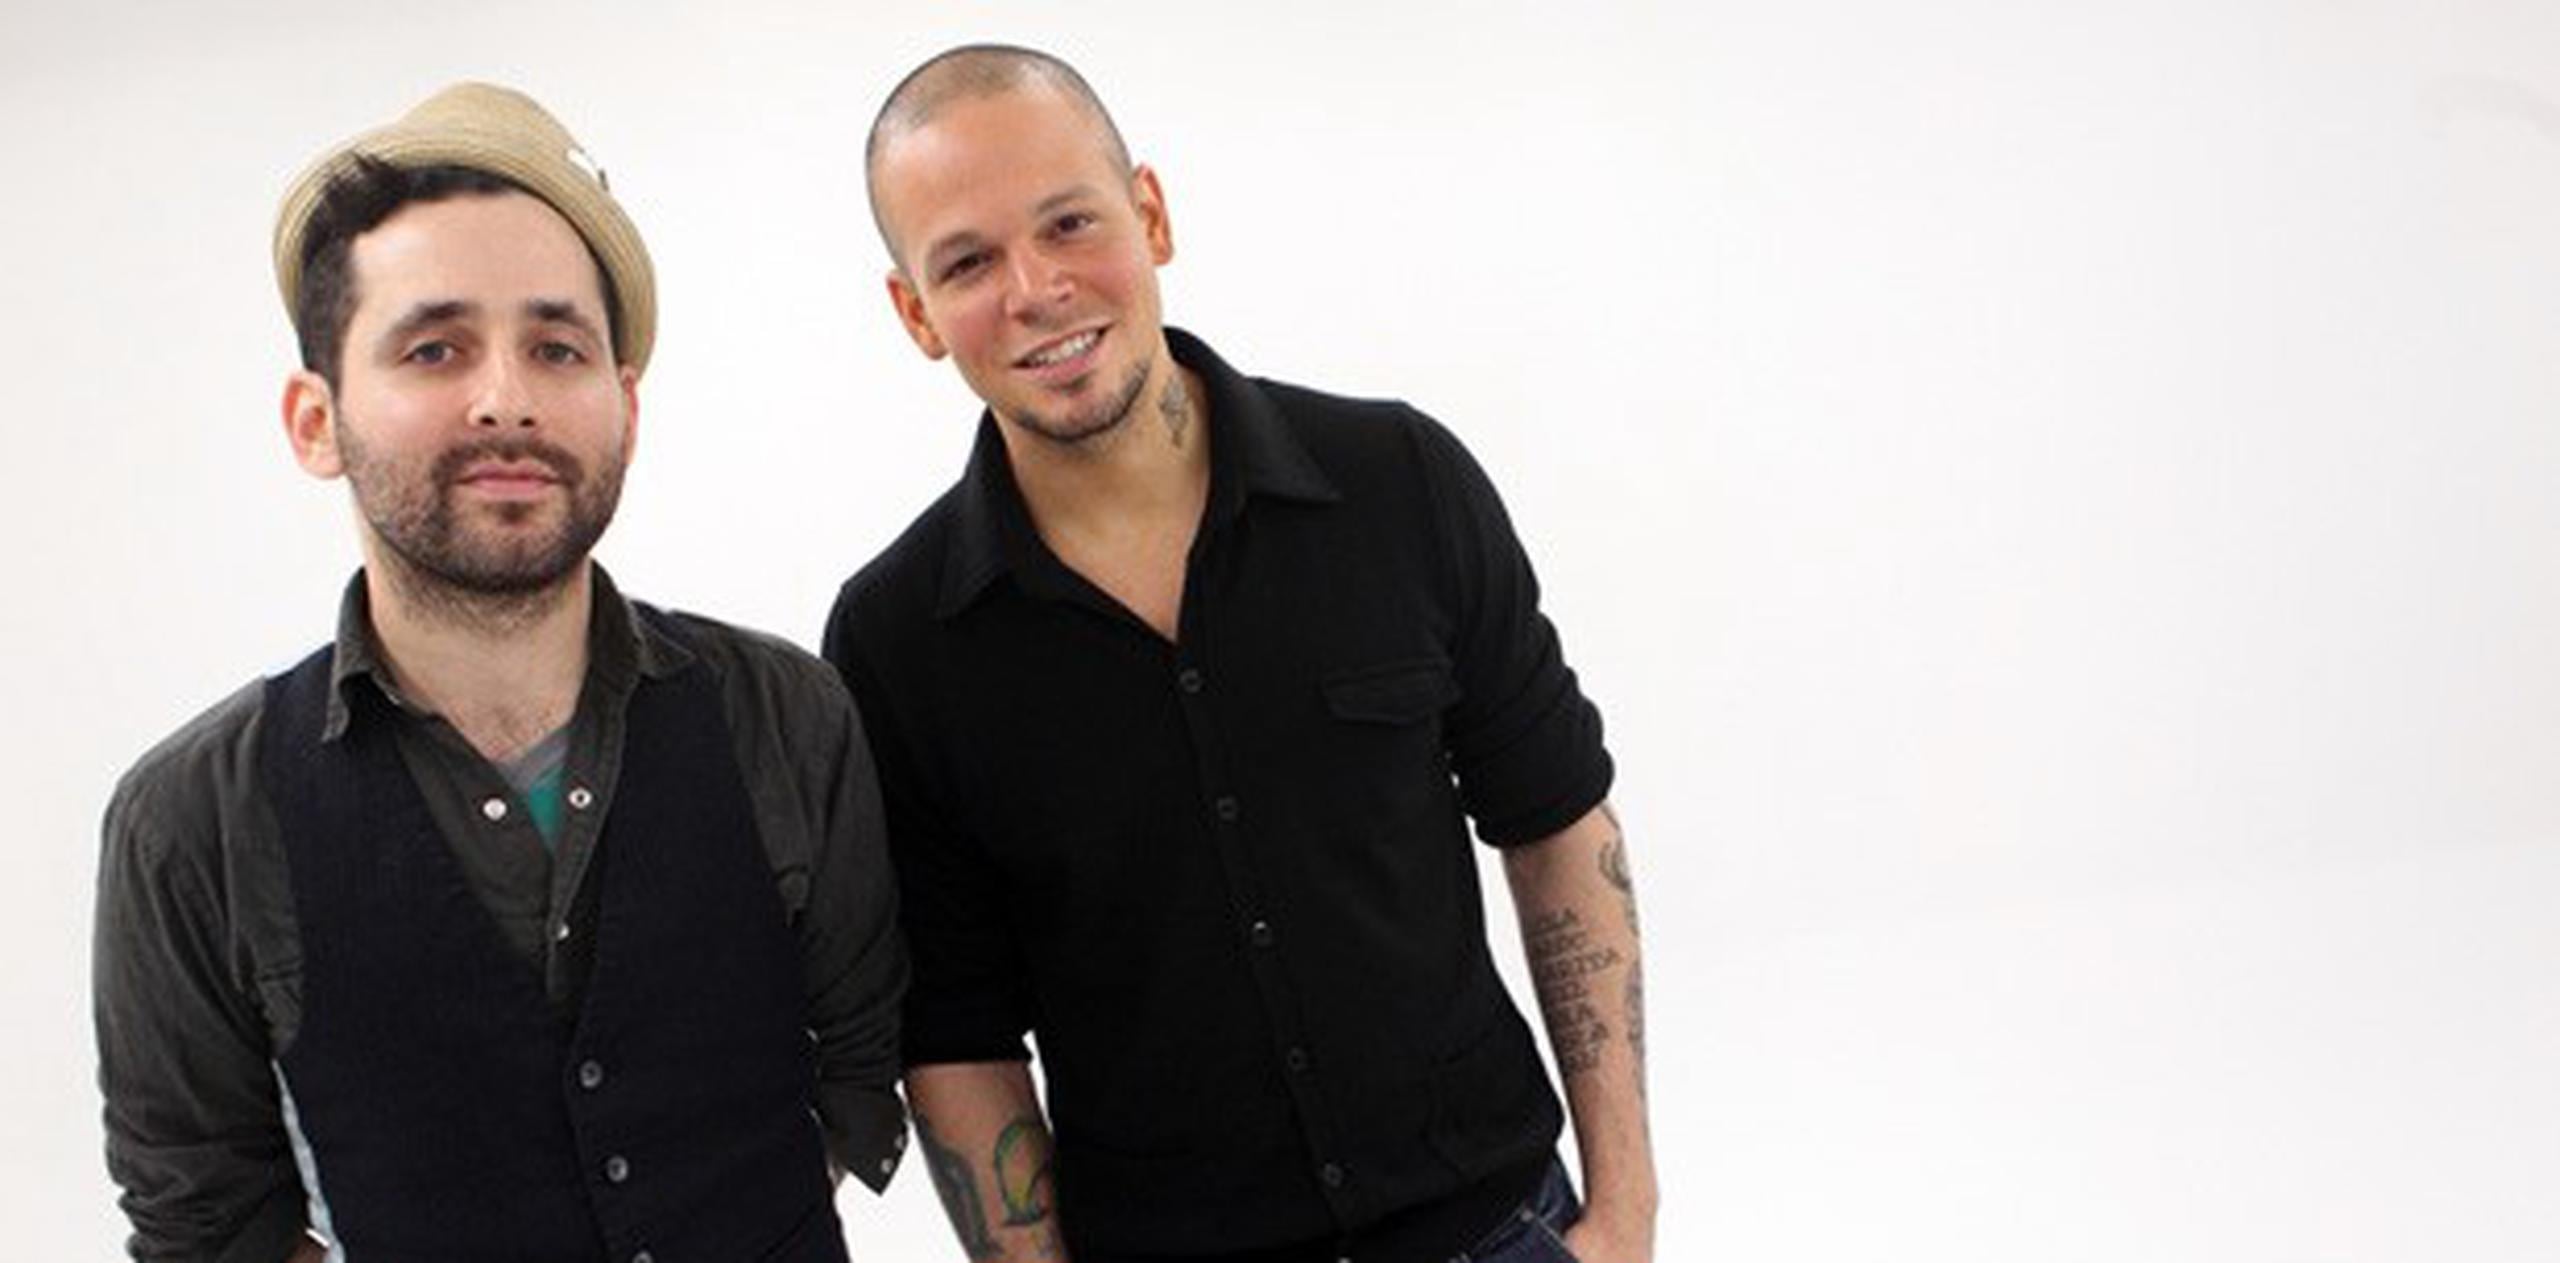 El dúo puertorriqueño Calle 13, compuesto por René Pérez (conocido como Residente) y su hermanastro Eduardo Cabra (Visitante), le dieron el toque latino al evento. (Archivo)